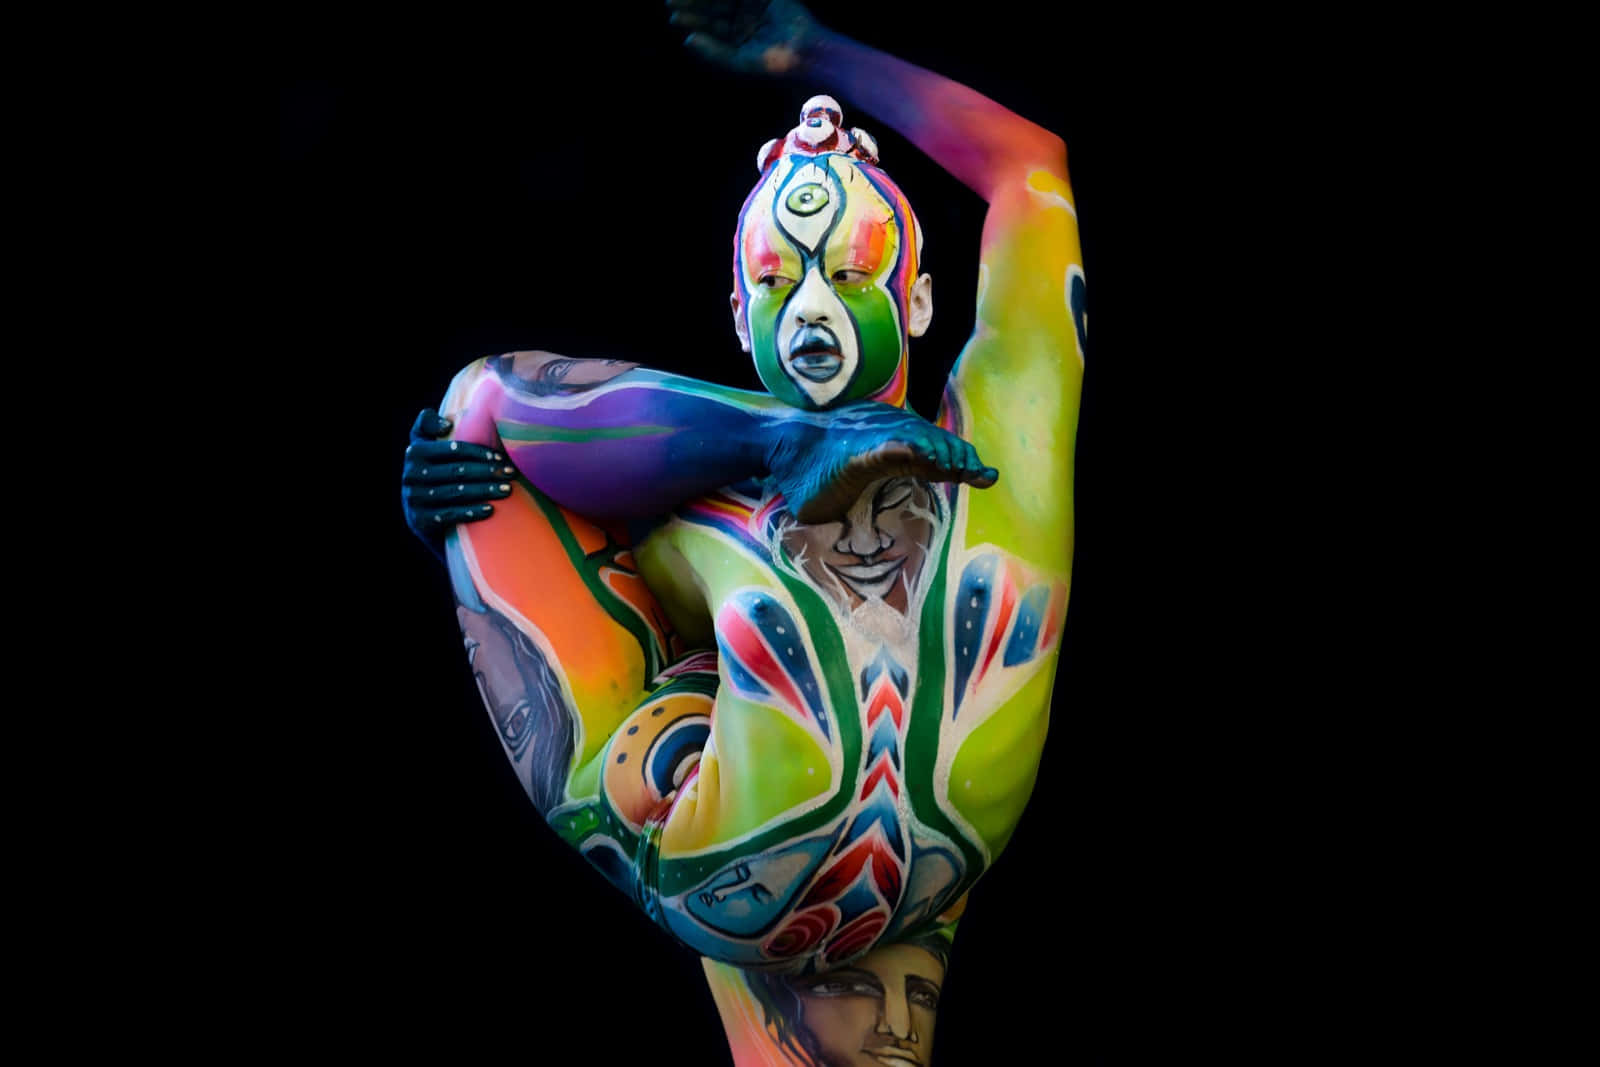 Festivaldel Body Painting Immagine Colorata Di Contorsionista.